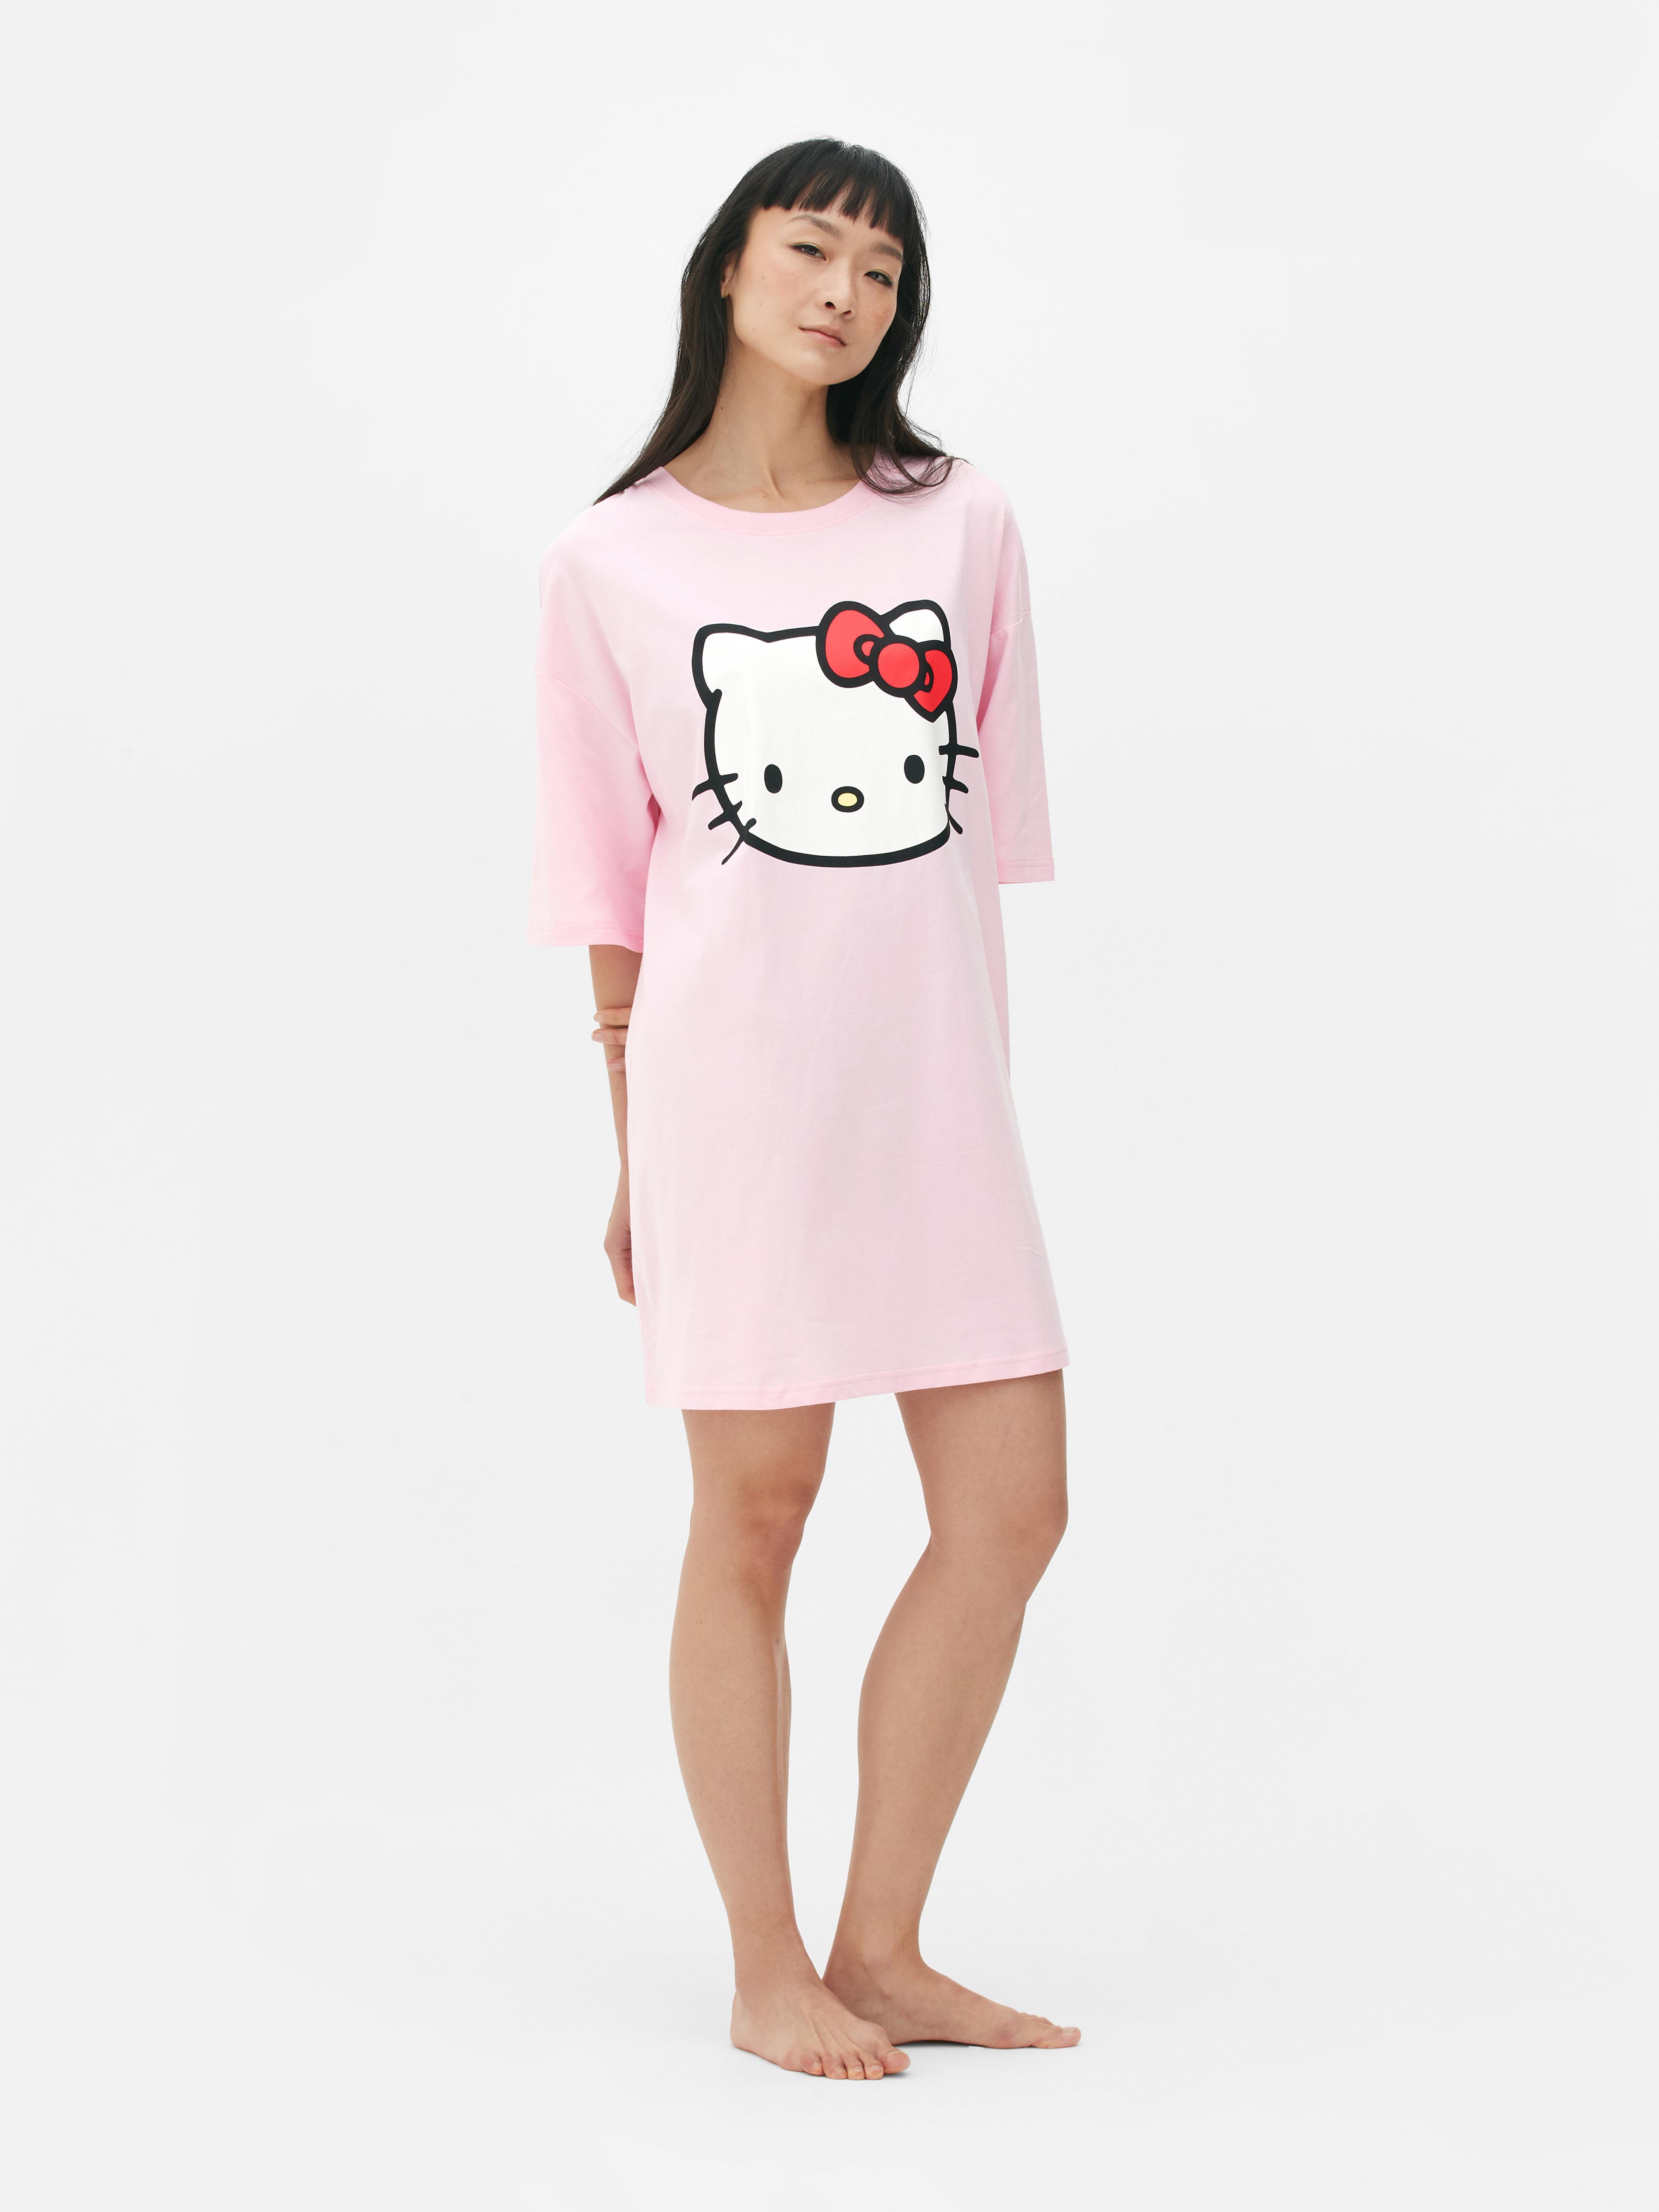 Camisón tipo camiseta de Hello Kitty